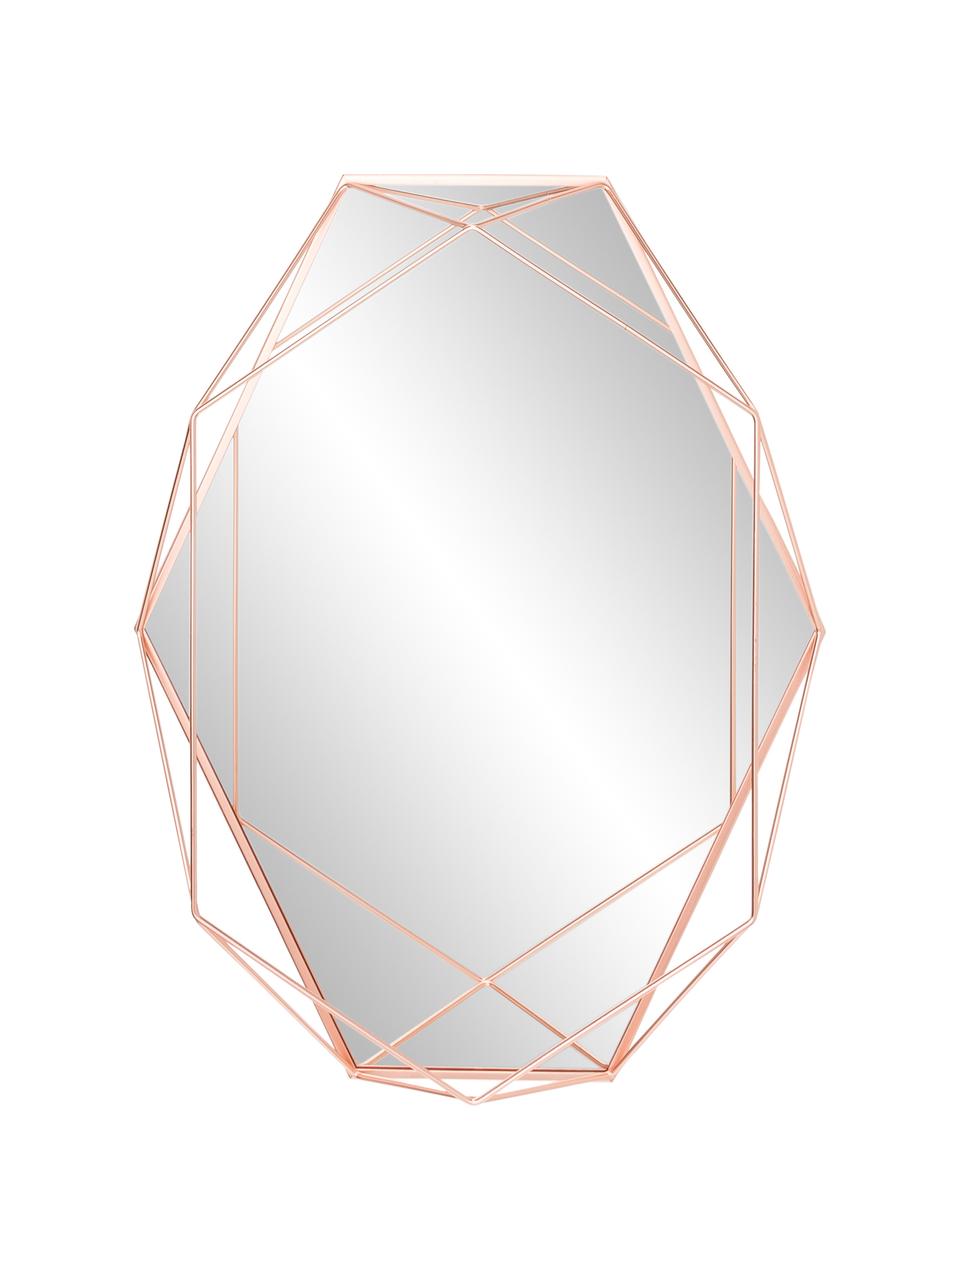 Owalne lustro ścienne Prisma, Miedź, S 43 x W 57 cm